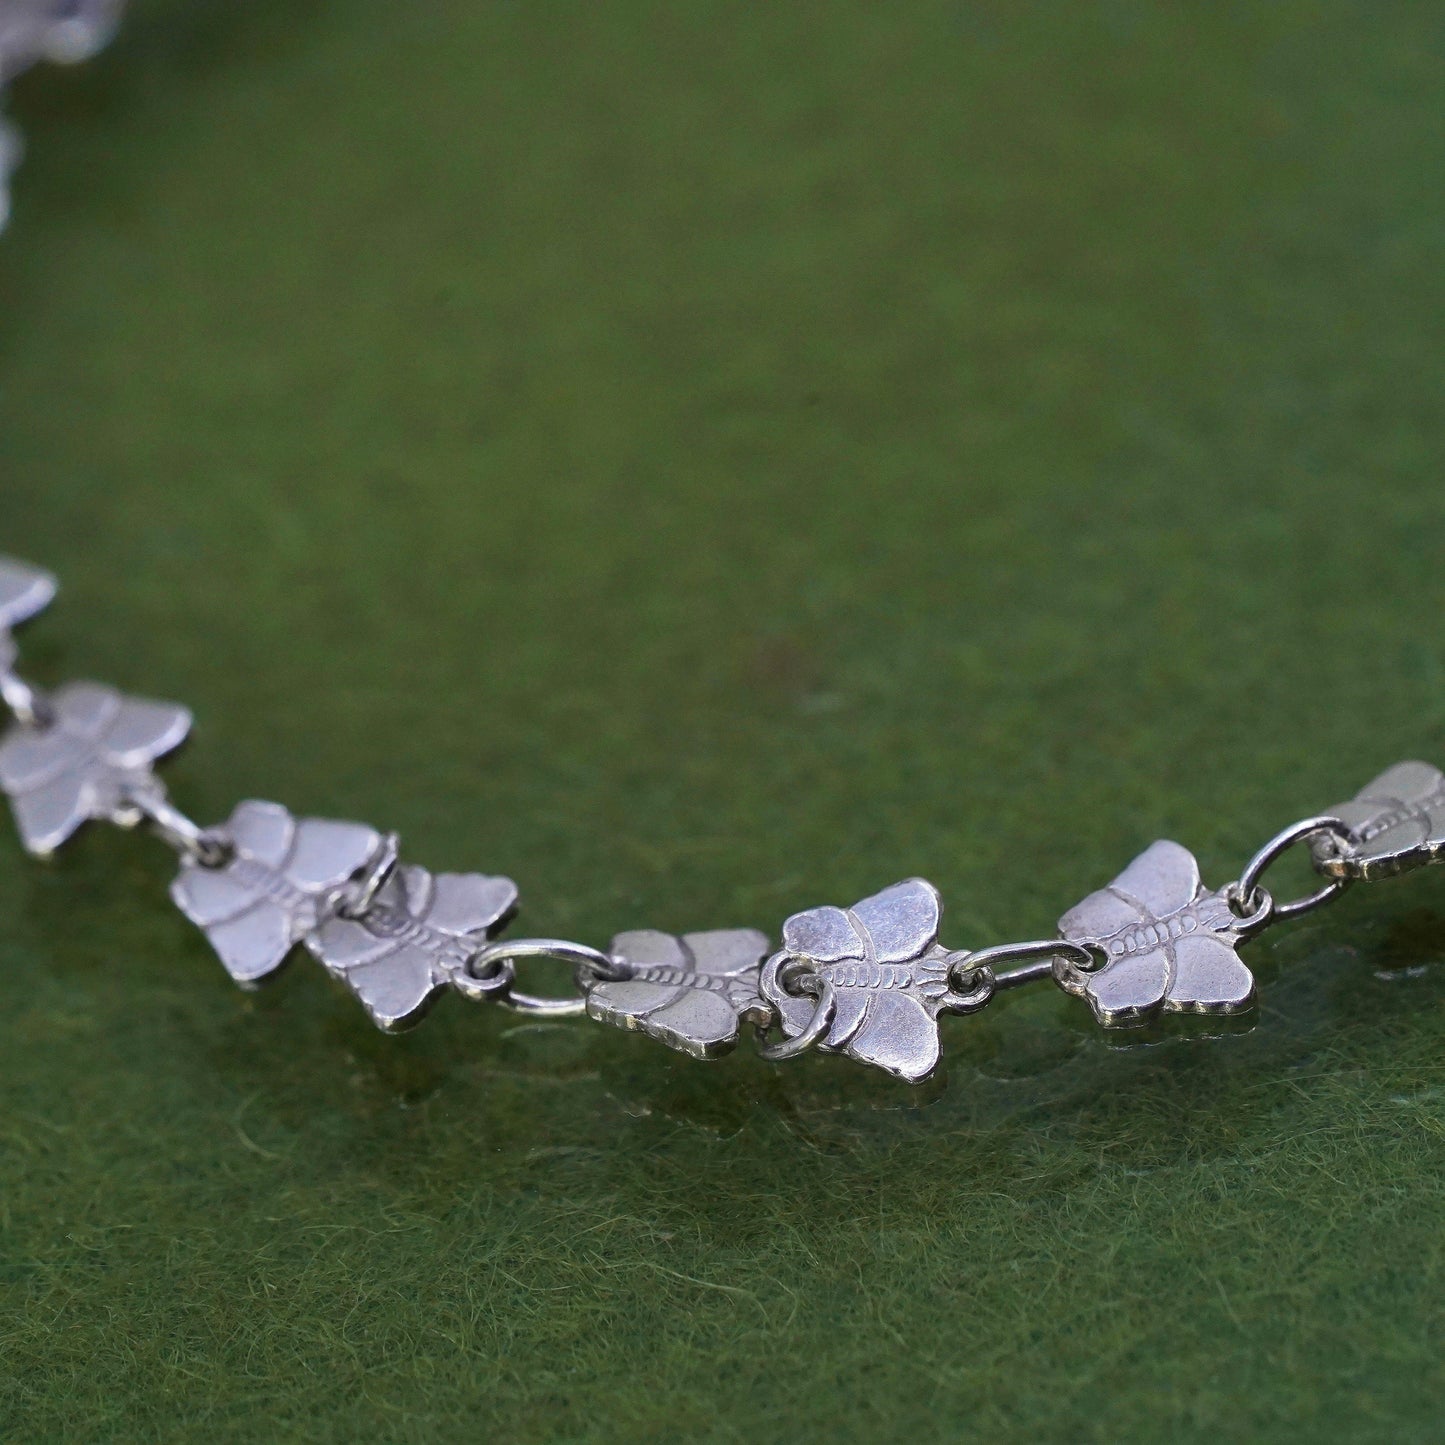 7.75", Italian sterling silver anklet, 925 silver butterfly link chain bracelet